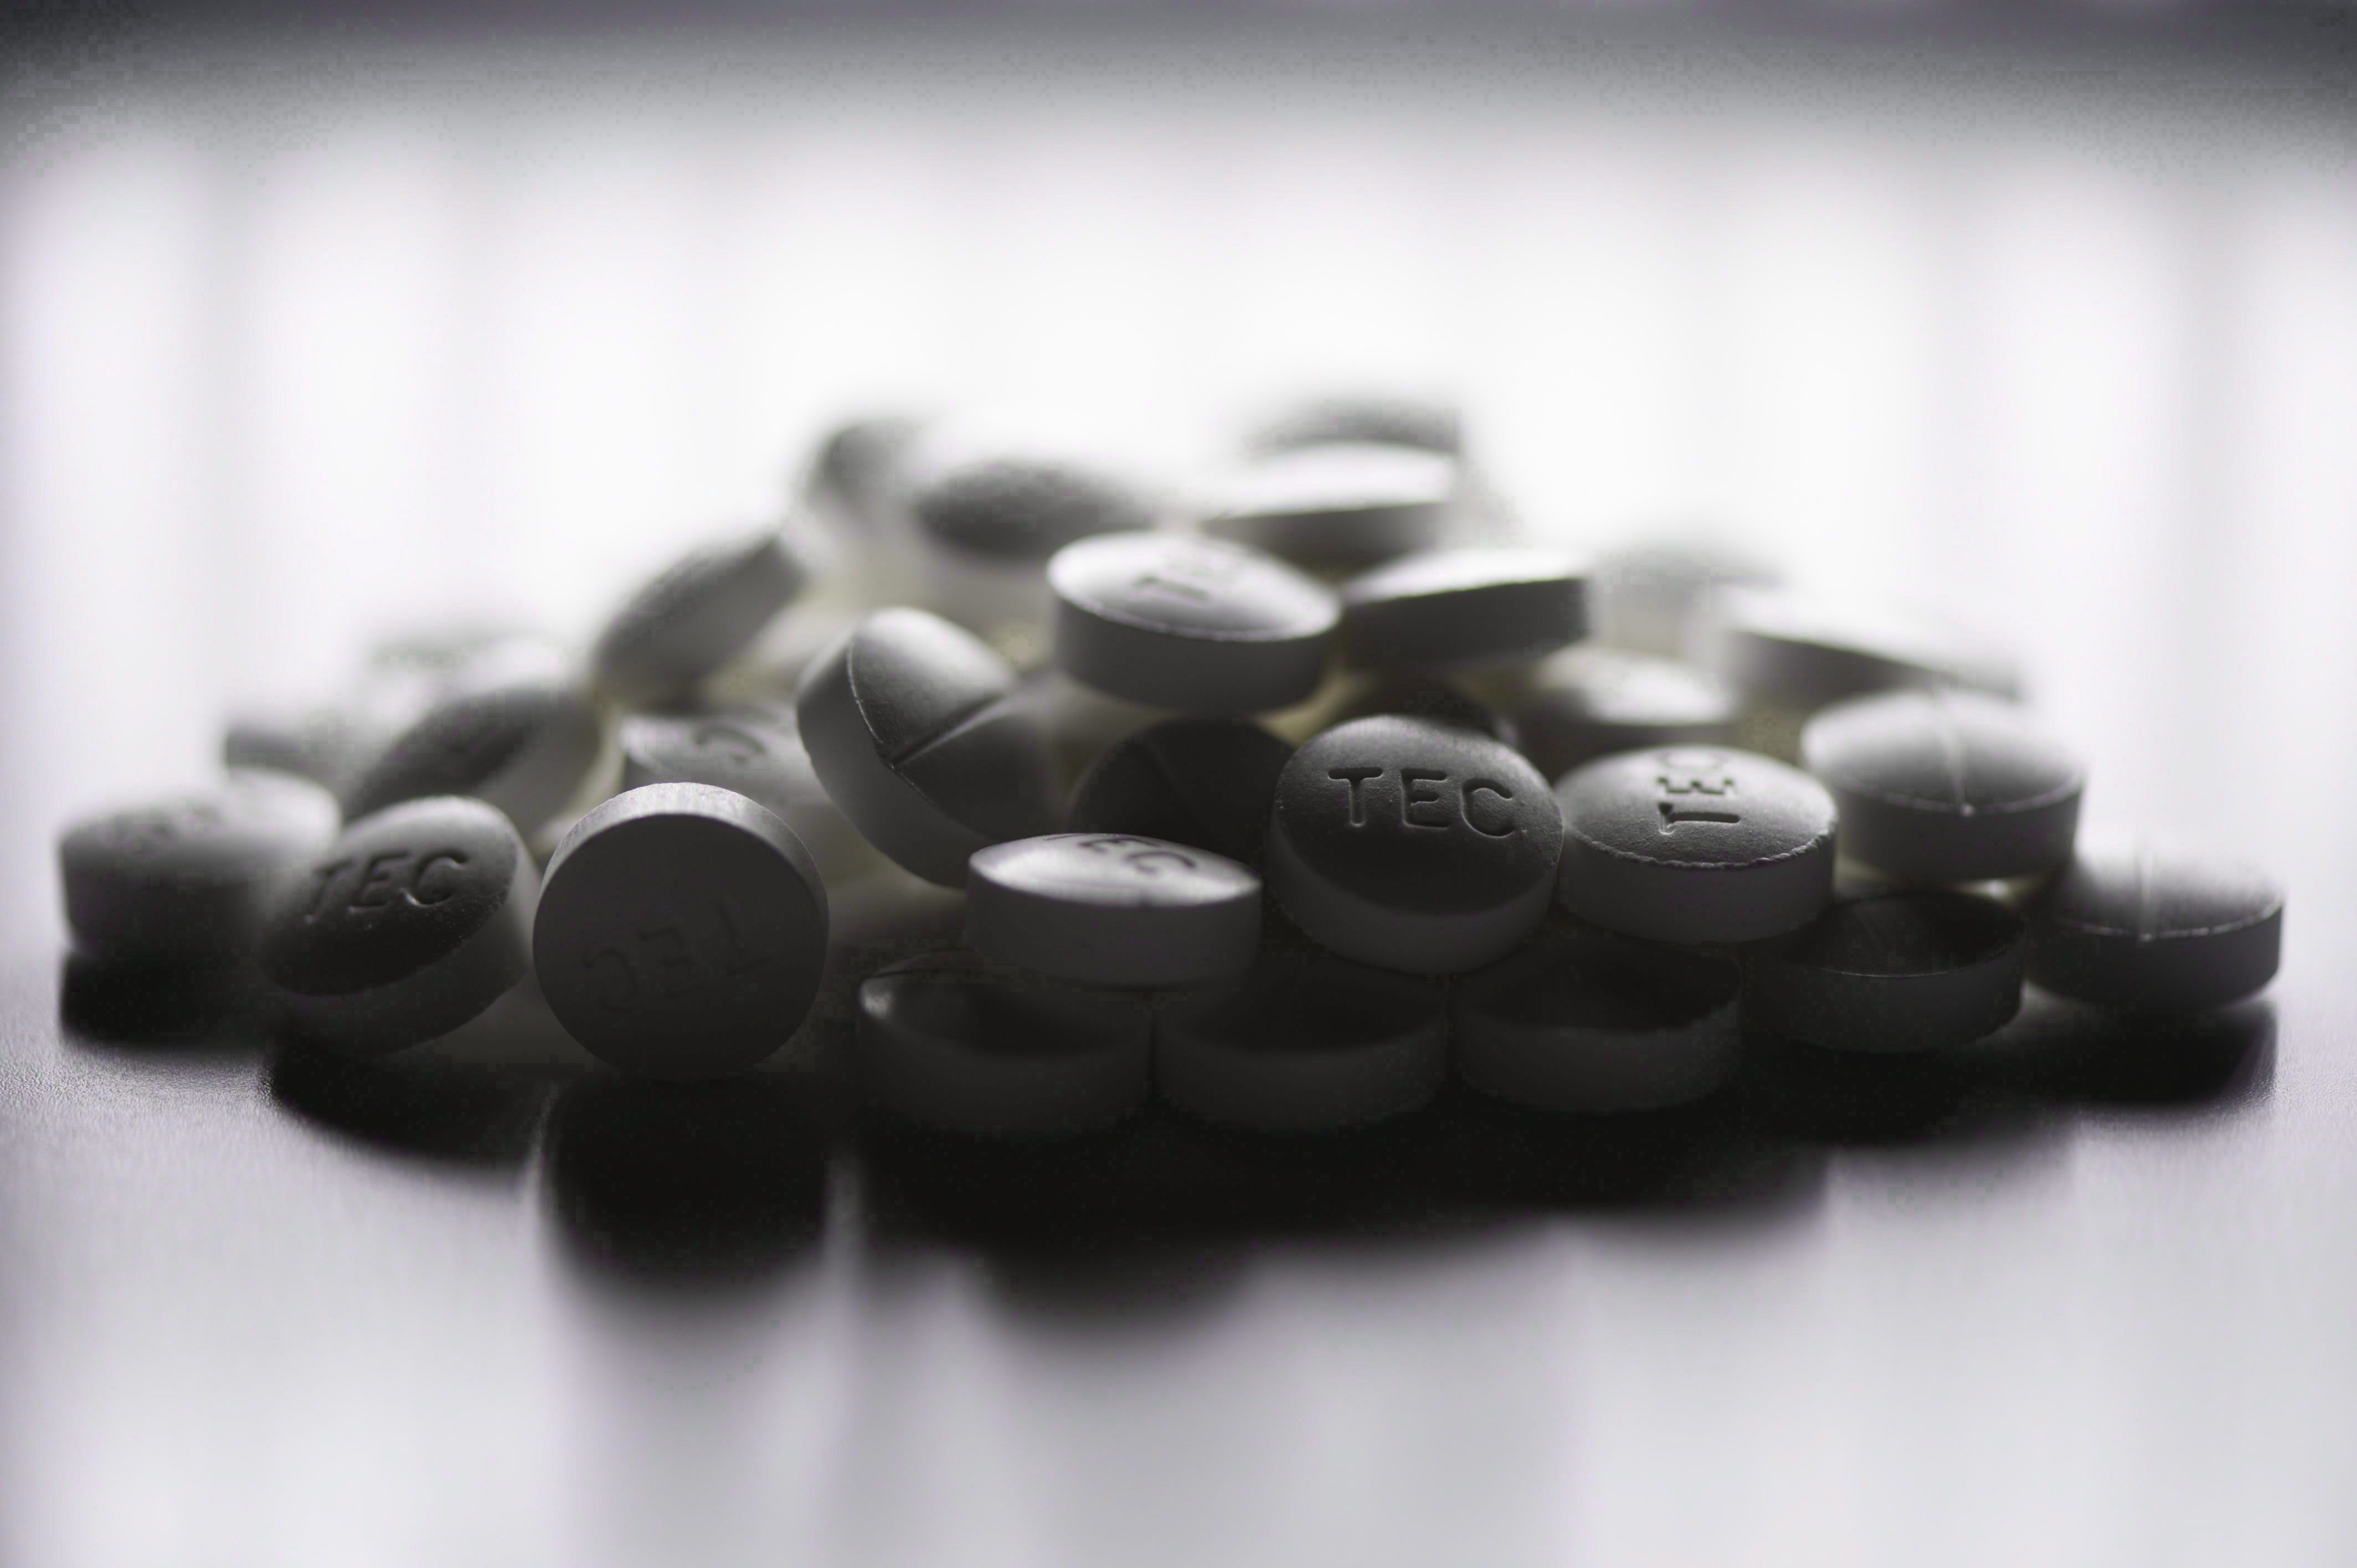 Rash of overdoses in Waterloo Region prompts community drug alert